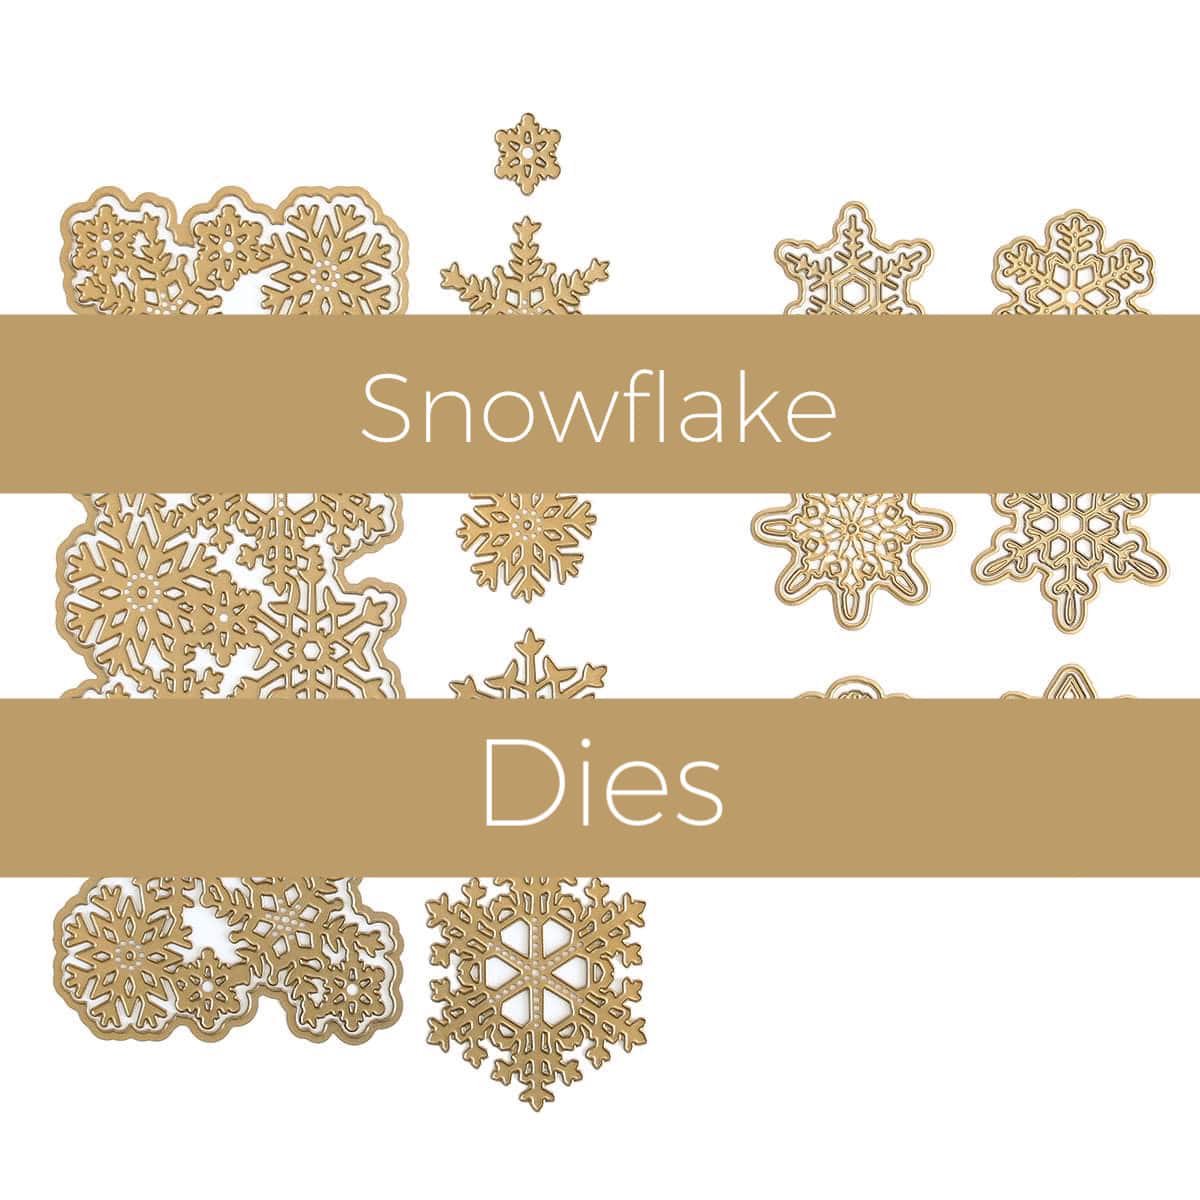 Snowflake dies.